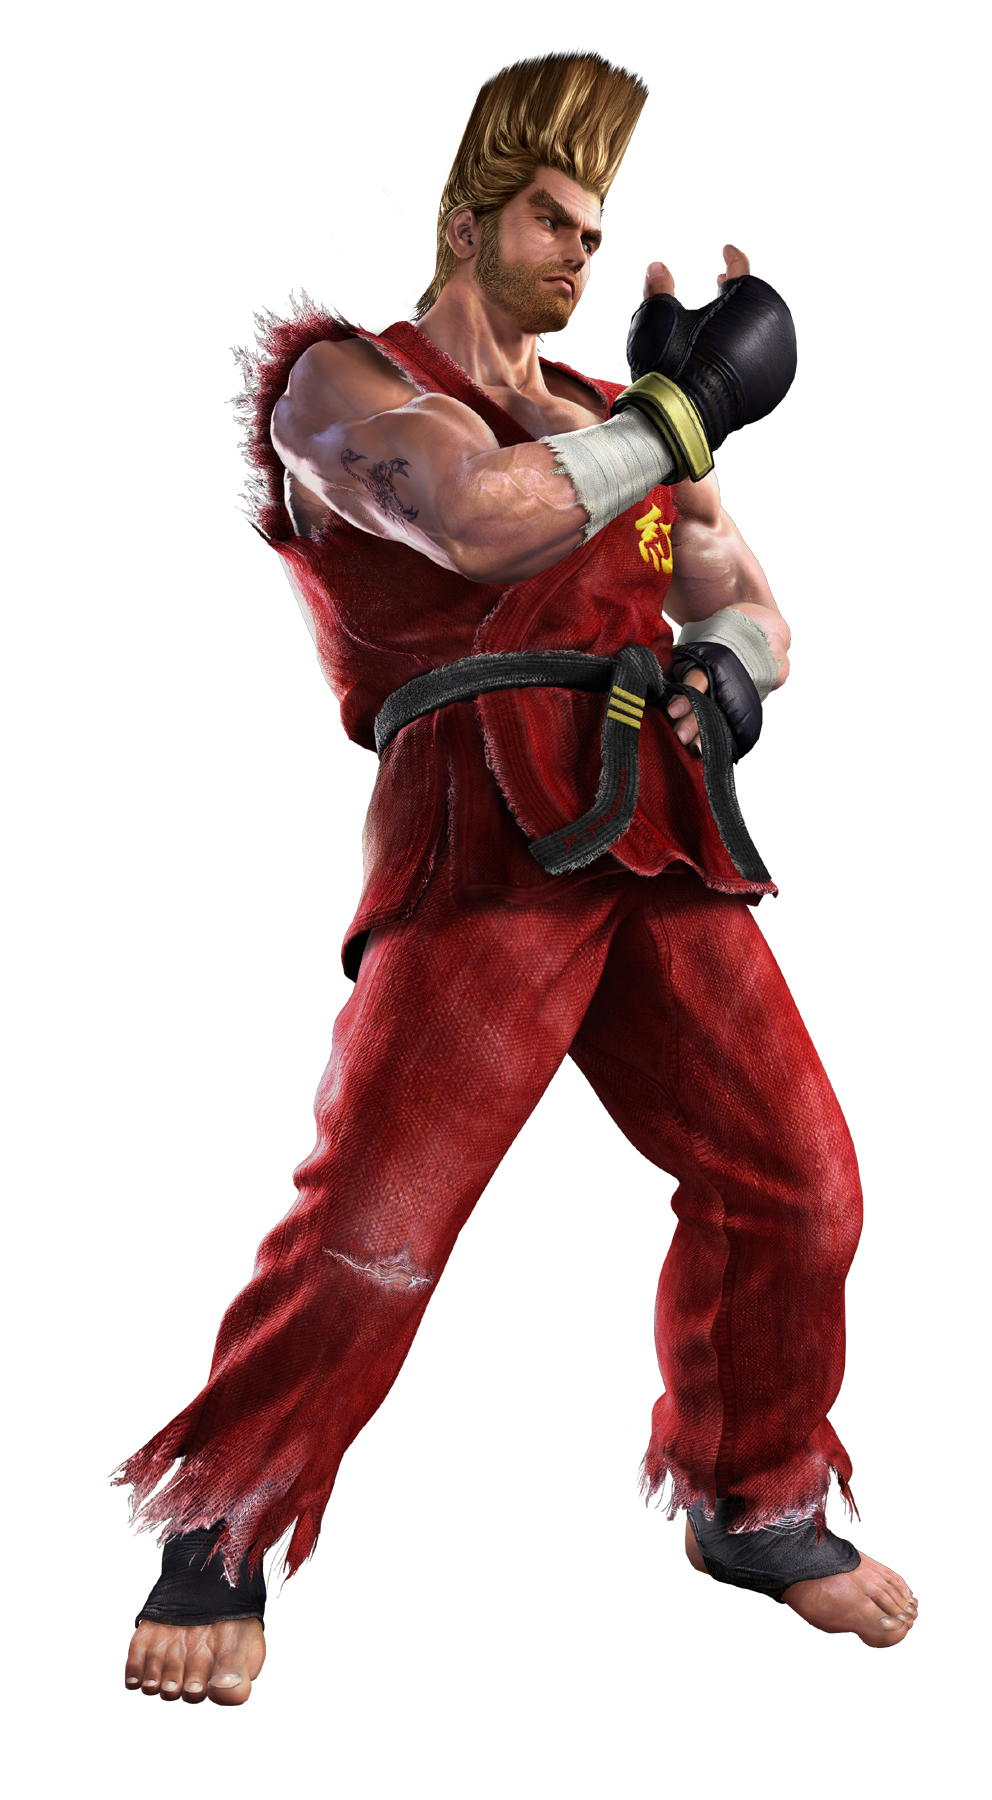 Takken. Tekken пол Феникс. Paul Phoenix Tekken 2. Теккен персонажи. Теккен 5.